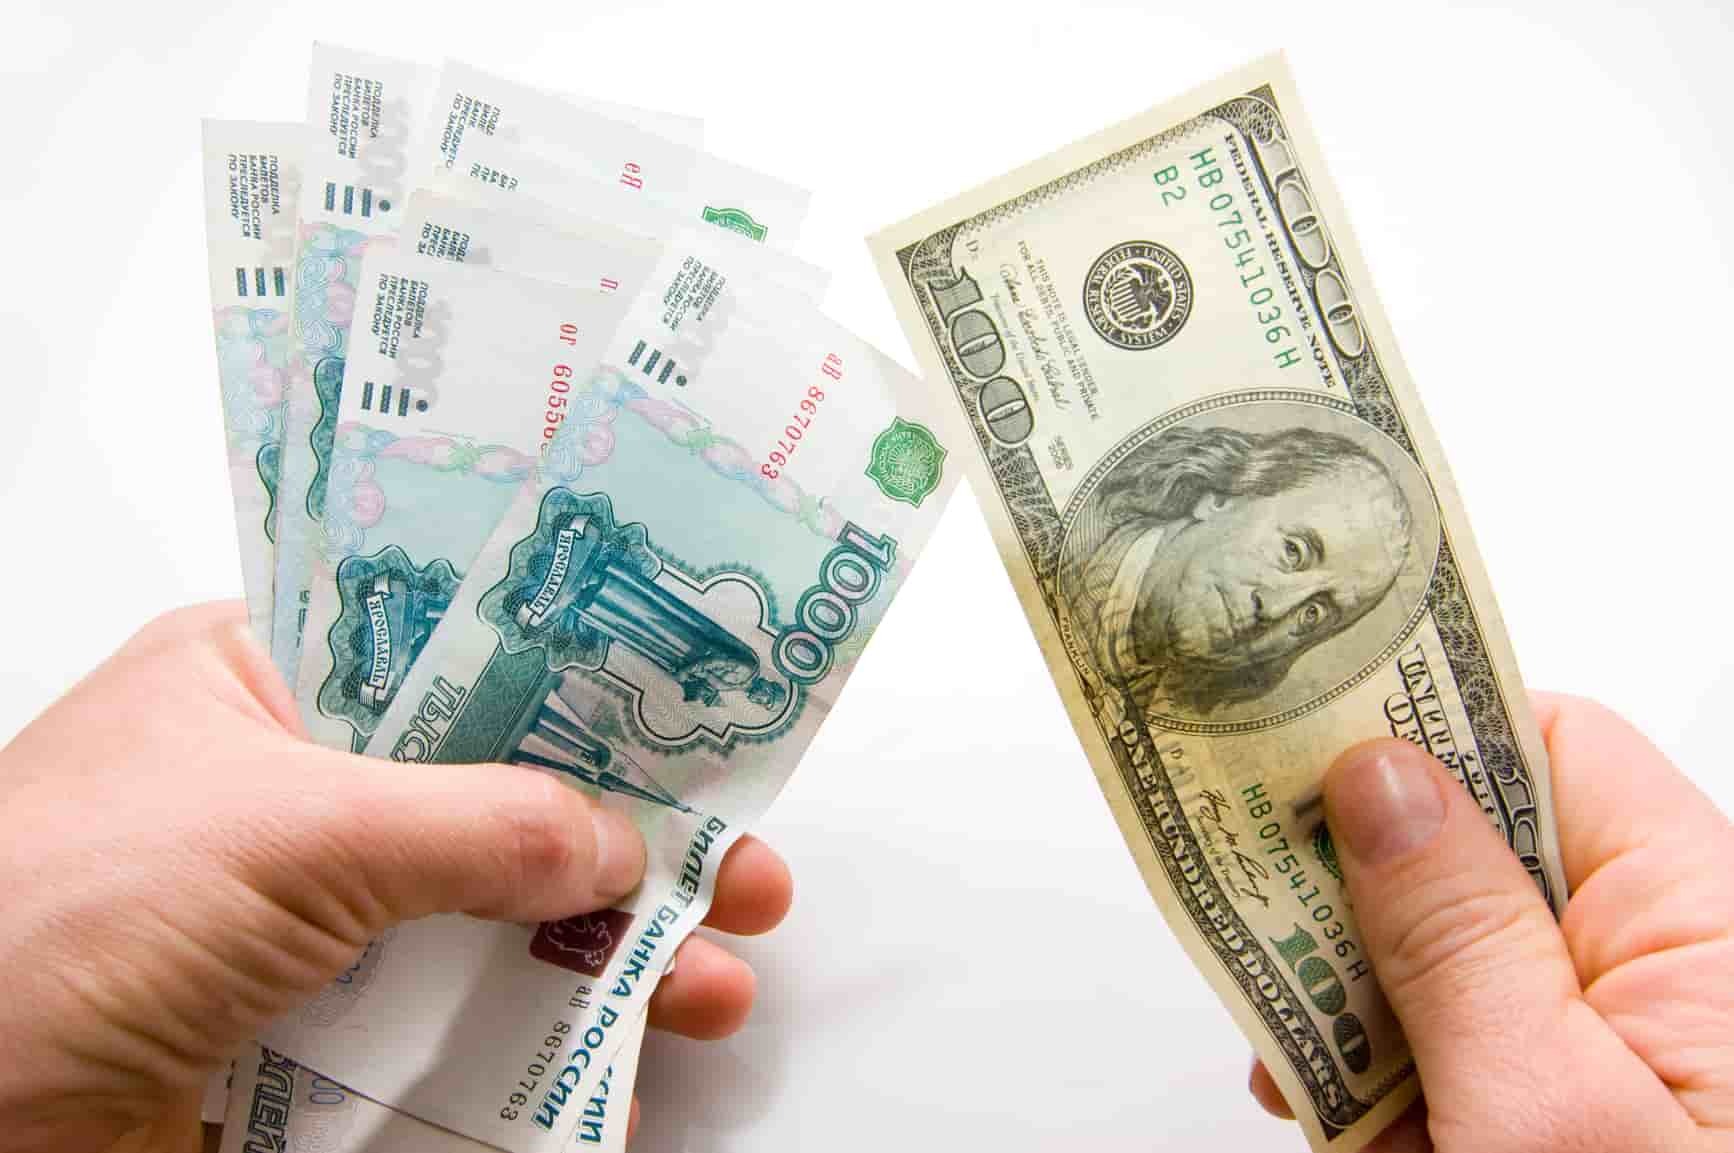 Rusiyada dollar kəskin BAHALAŞDI – Hazırda 86 rubldan YÜKSƏKDİR